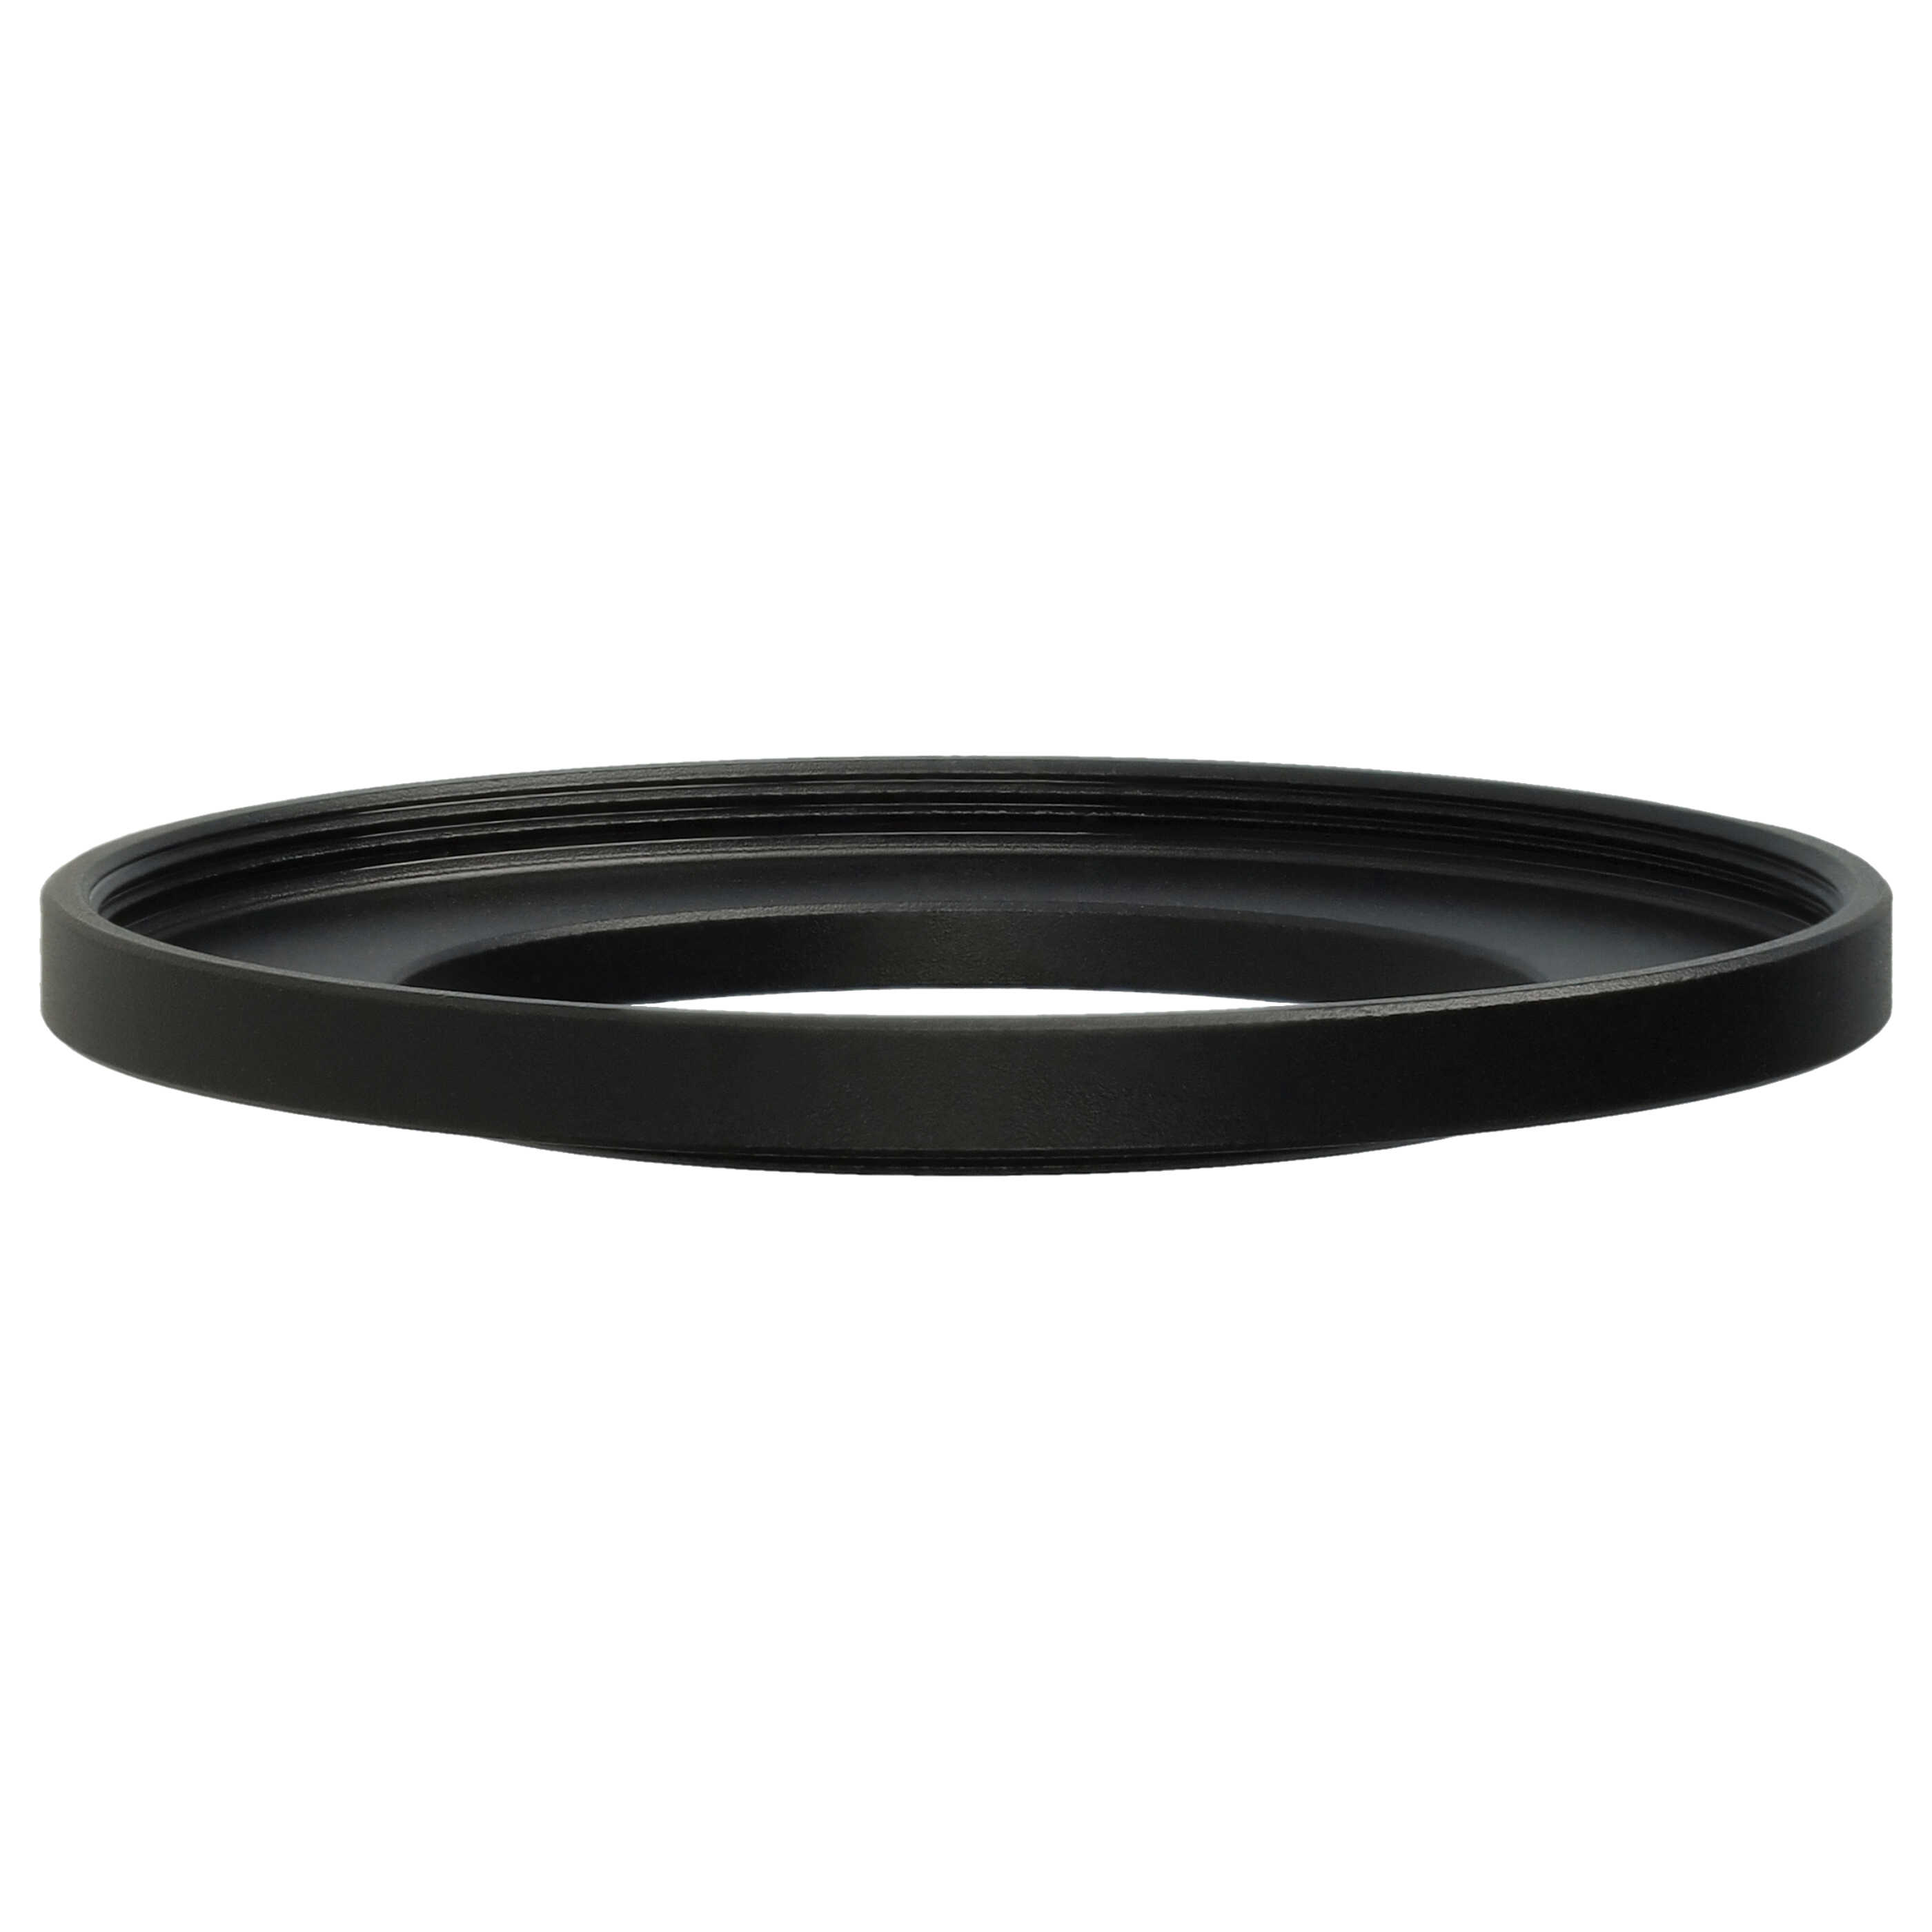 Step-Up-Ring Adapter 37 mm auf 52 mm passend für diverse Kamera-Objektive - Filteradapter